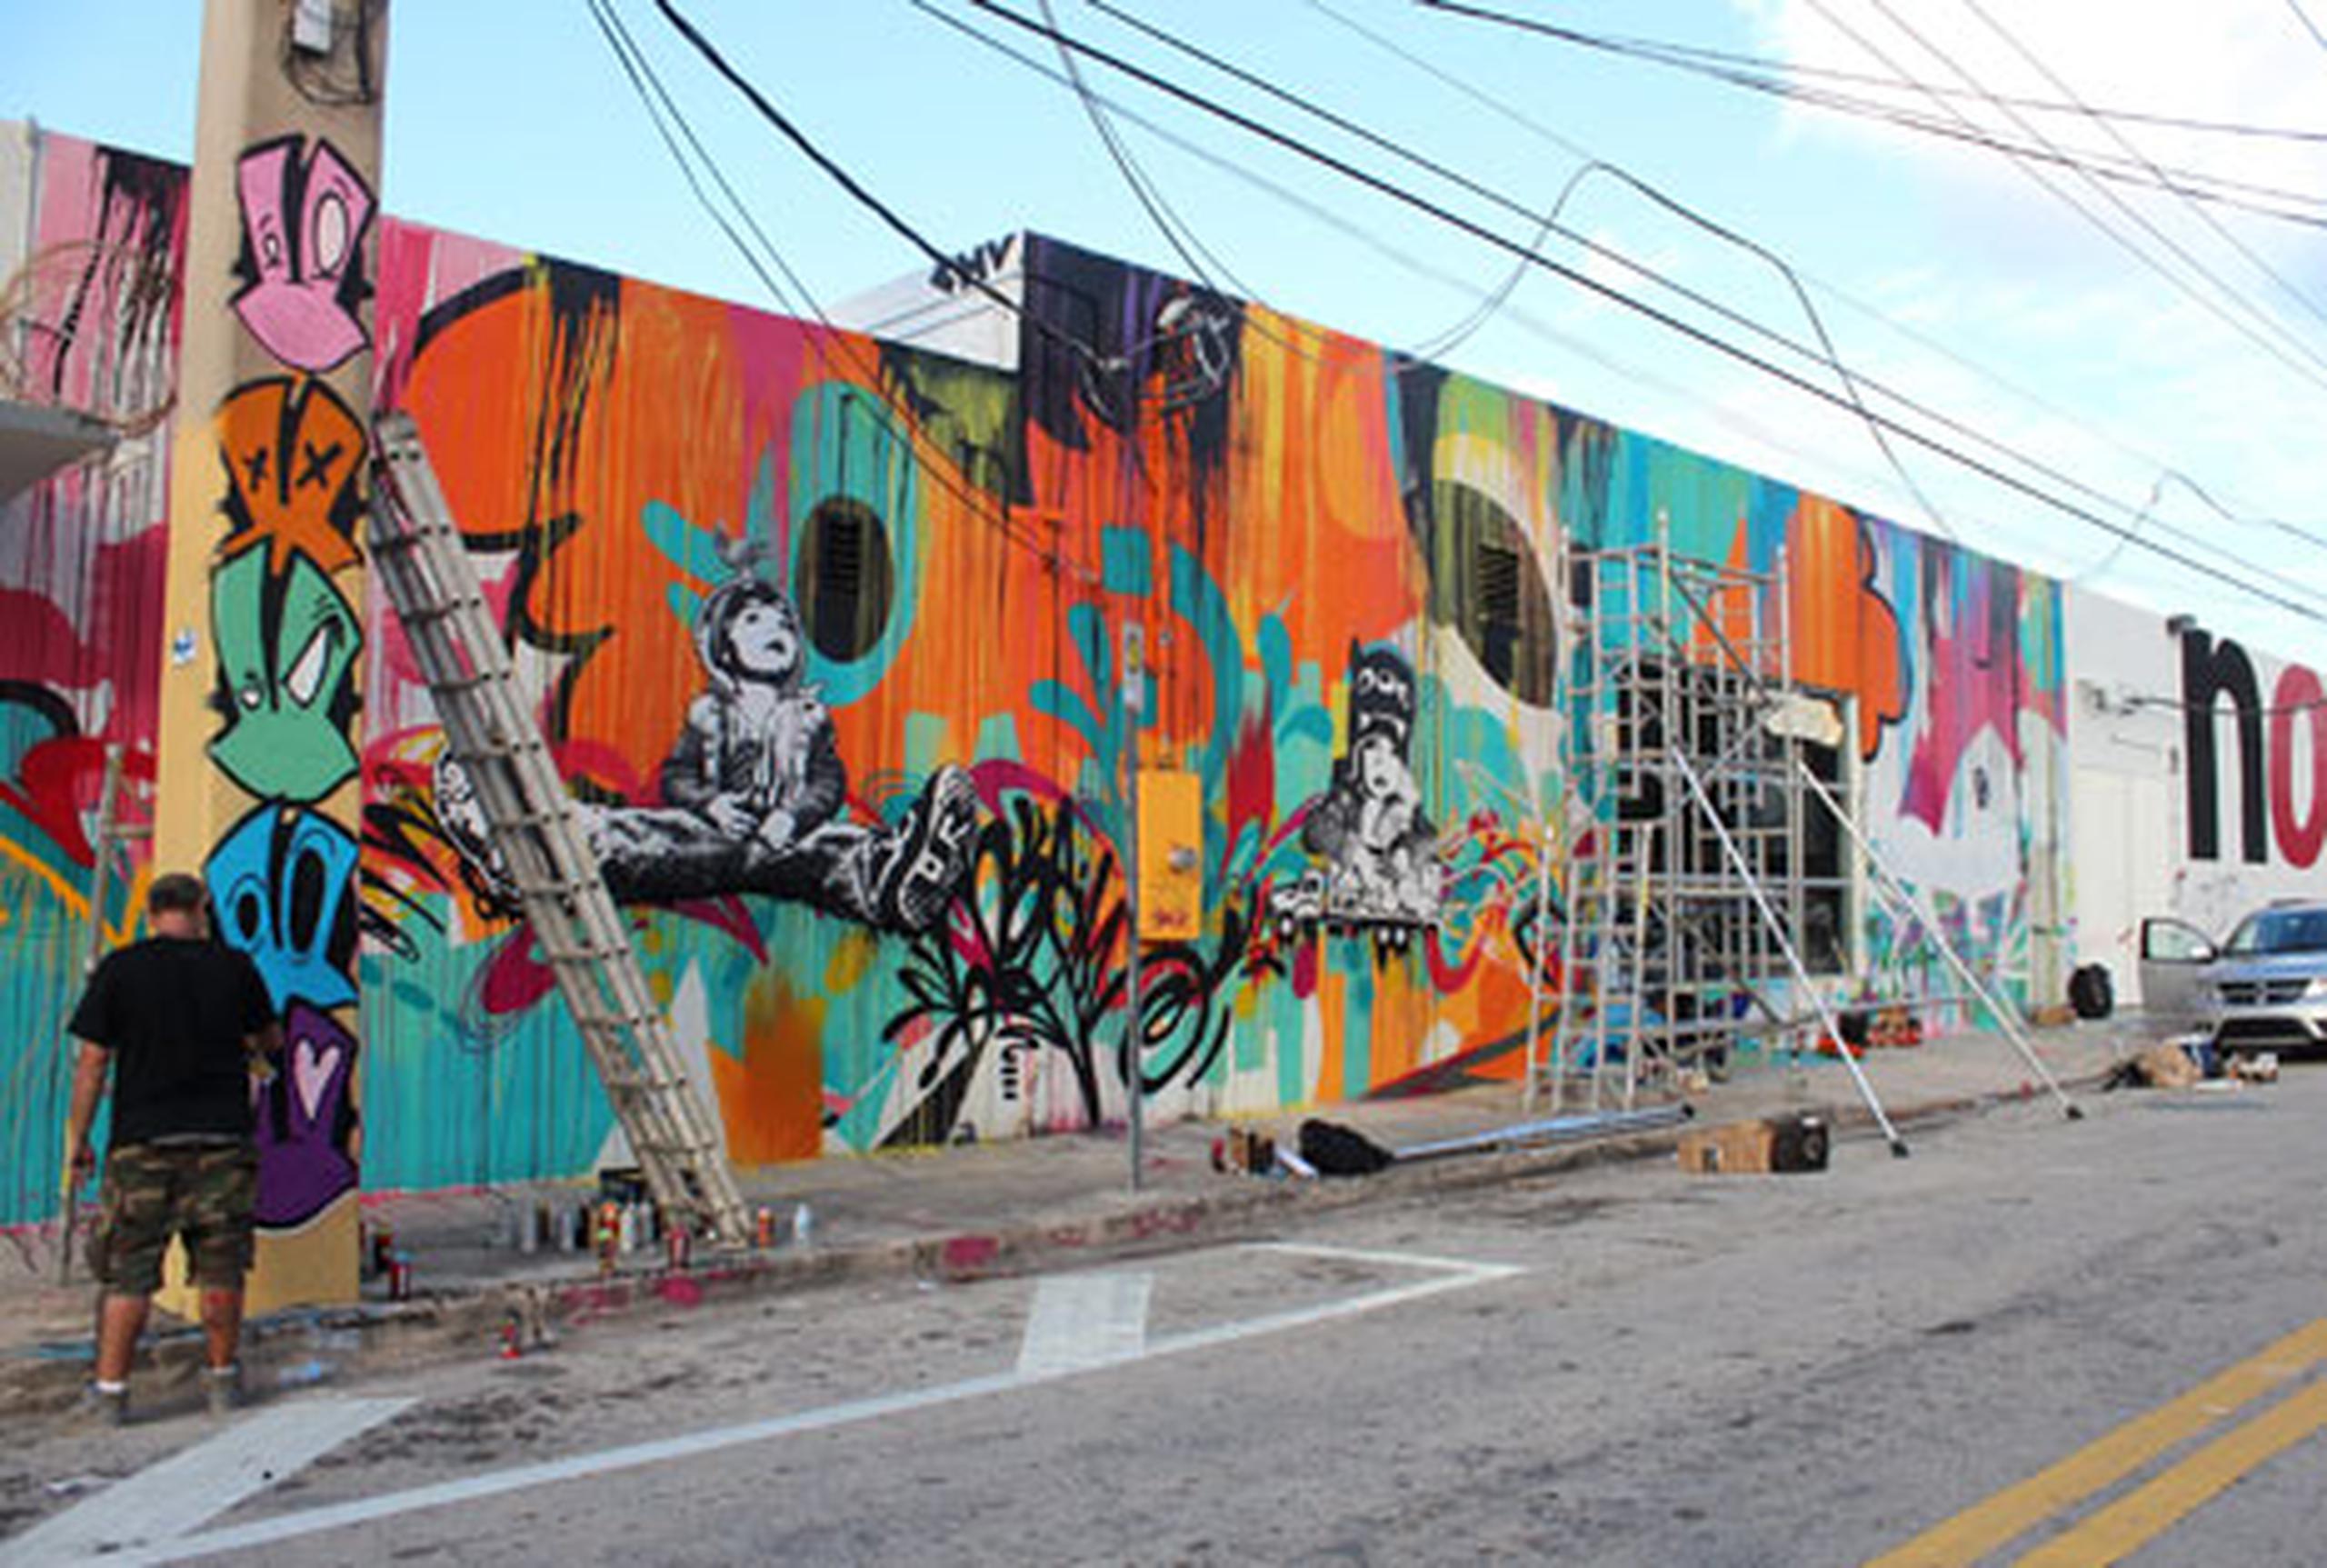 La zona de grafitis de Wynwood, el barrio artístico de Miami, reafirmará a partir del miércoles su condición de referente de las nuevas corrientes plásticas. (EFE/Mar Gonzalo)